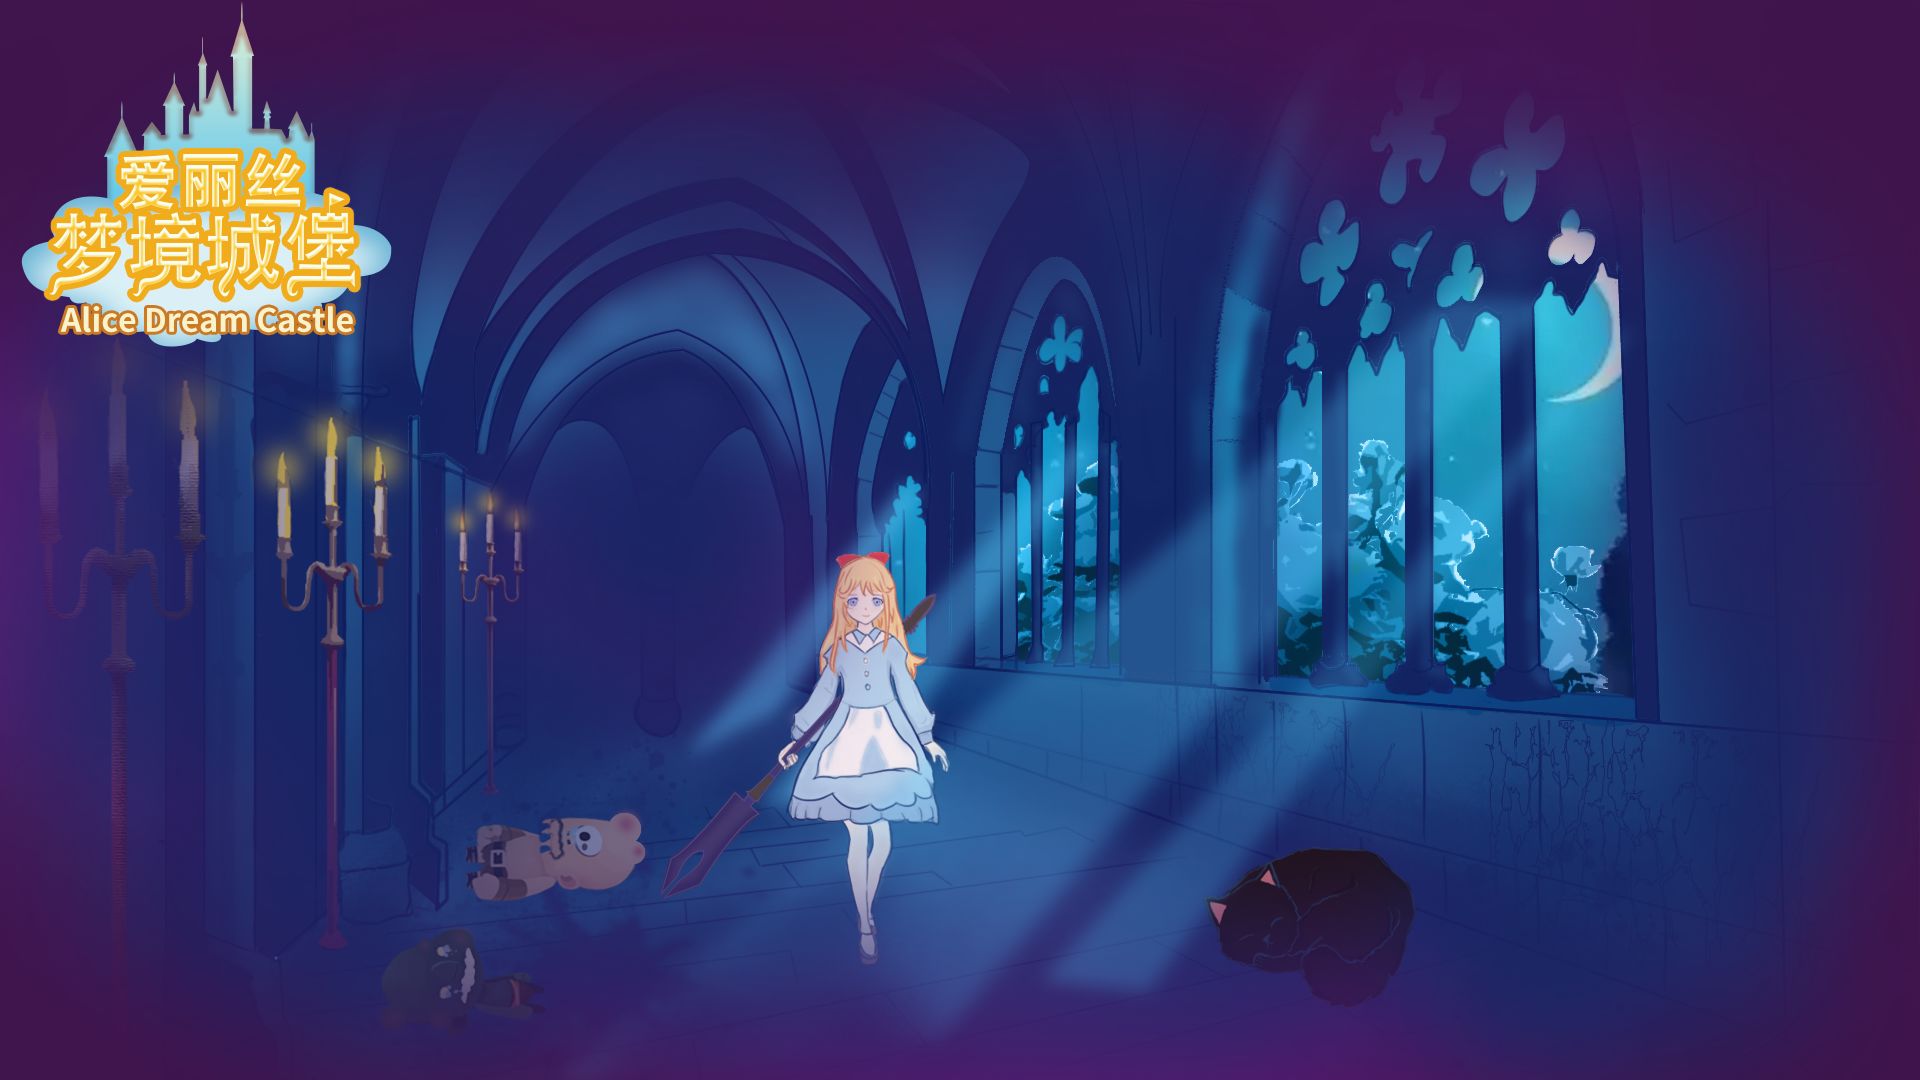 爱丽丝梦境城堡